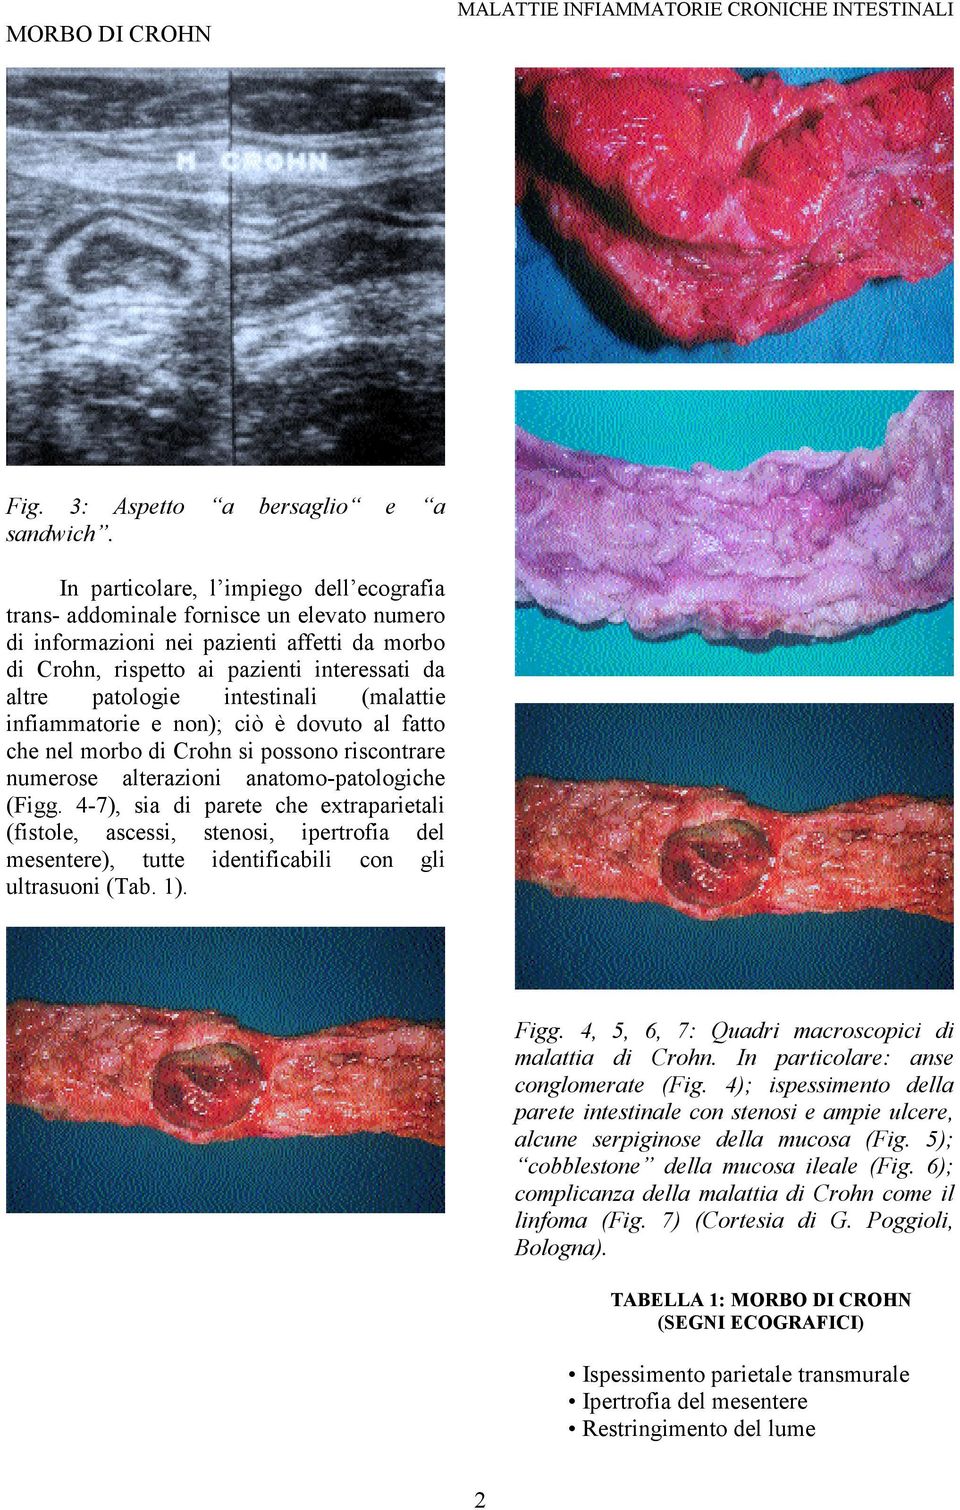 intestinali (malattie infiammatorie e non); ciò è dovuto al fatto che nel morbo di Crohn si possono riscontrare numerose alterazioni anatomo-patologiche (Figg.